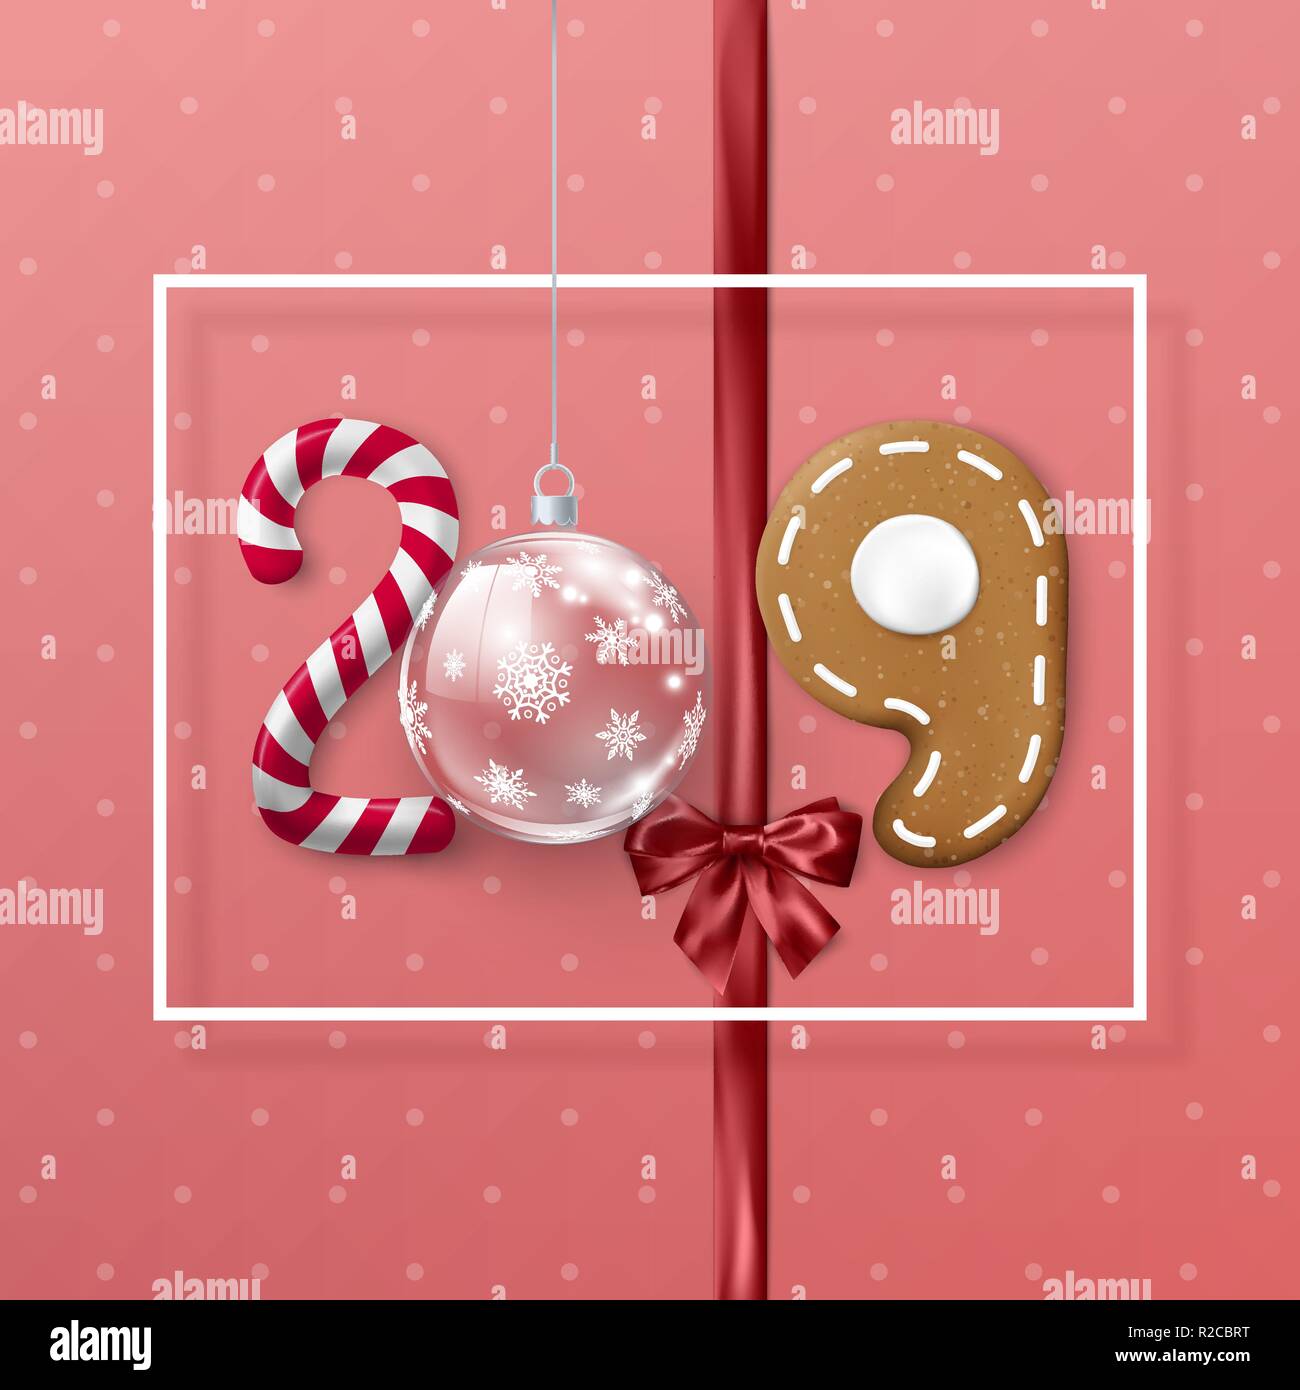 Neues Jahr 2019 Banner mit weißen Rahmen. Kreative festliche Schriftzug. Candy und christmas ball Band mit Schleife und Lebkuchen Cookie. Vektor illustratio Stock Vektor